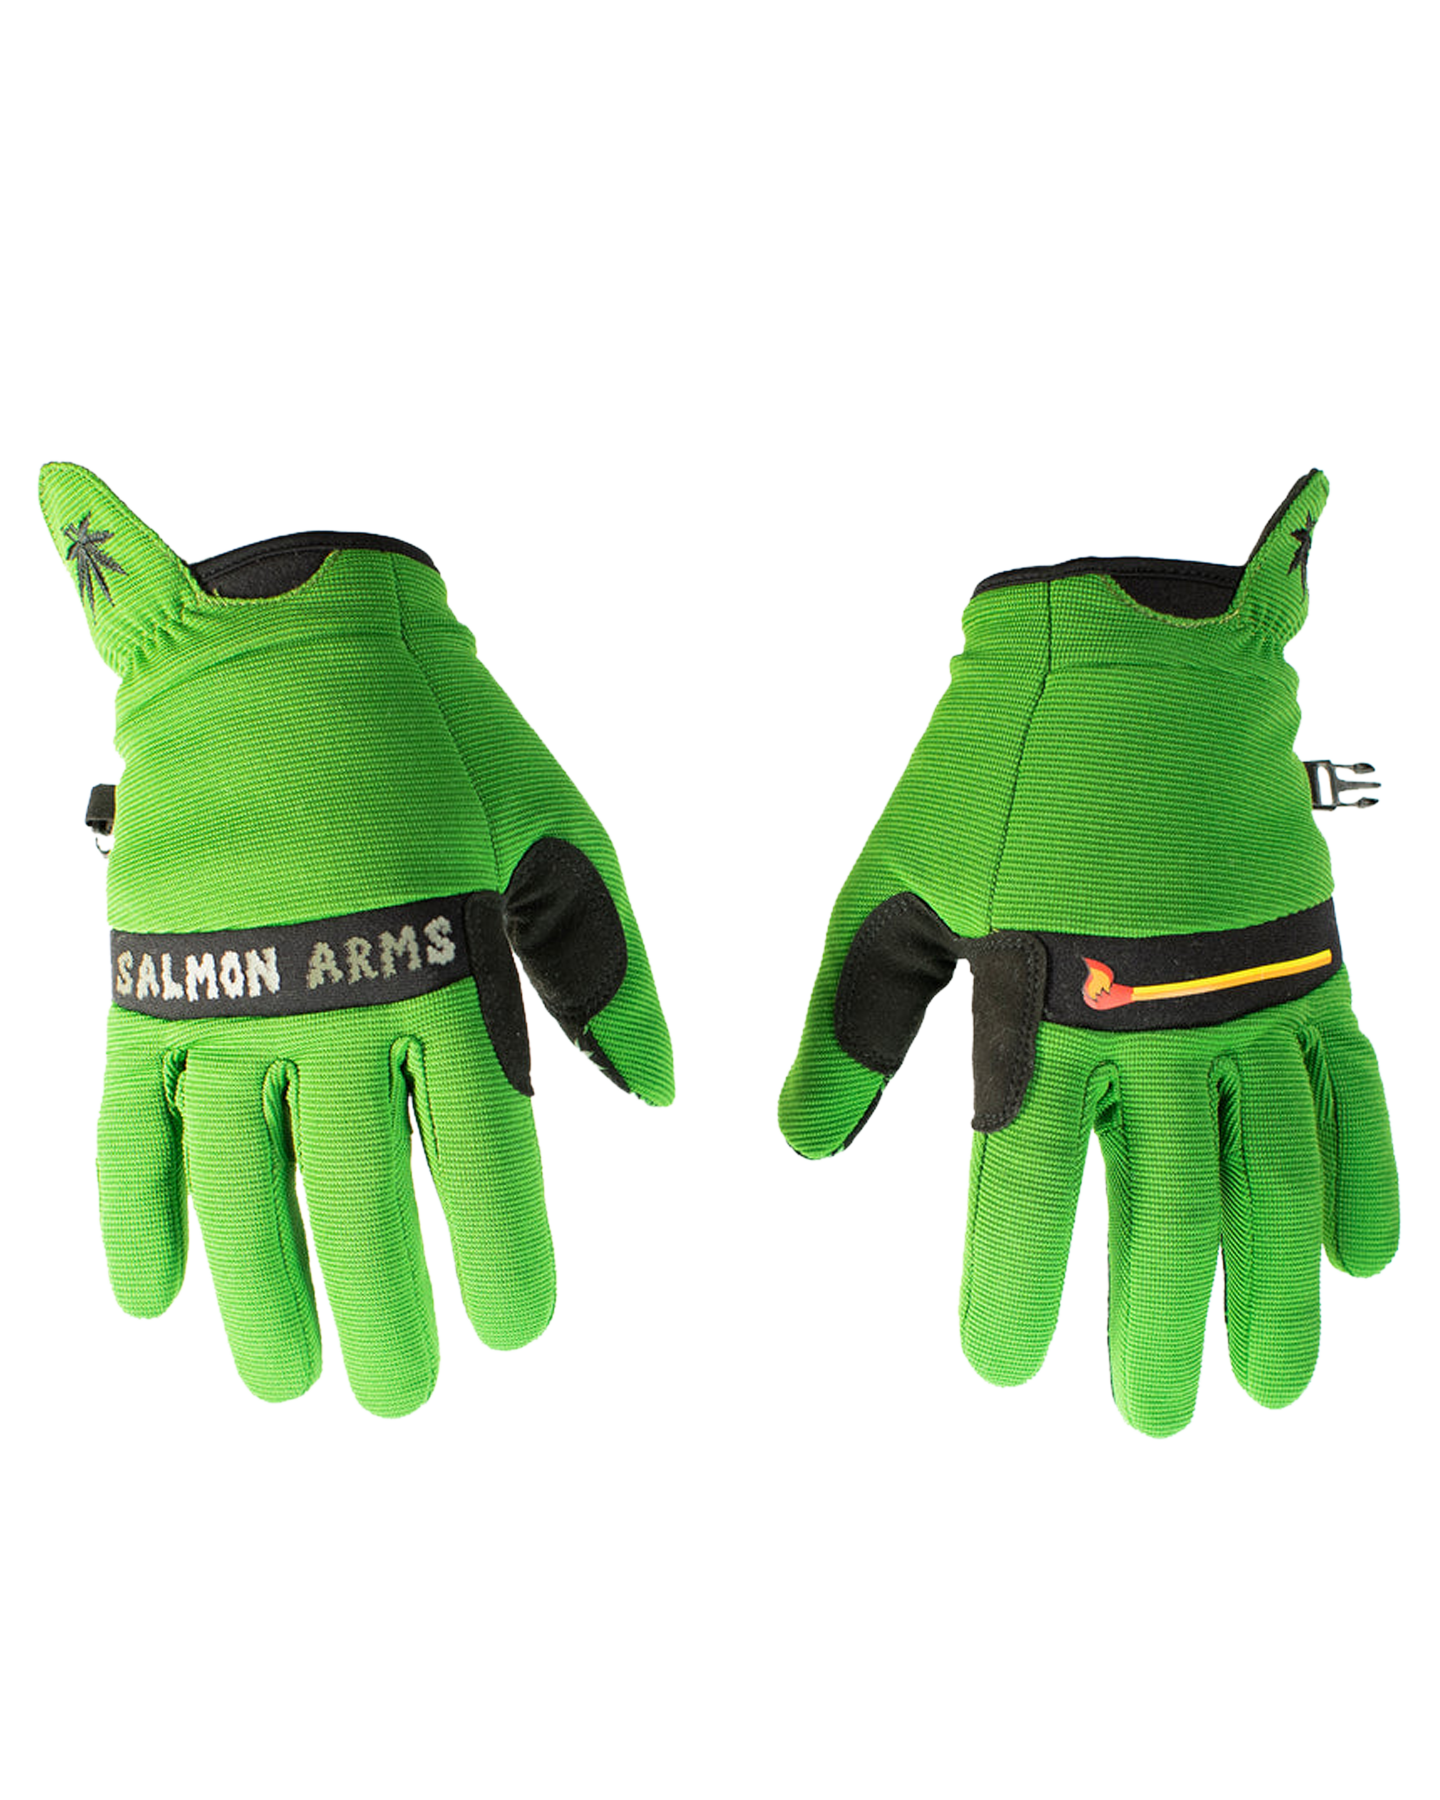 Salmon Arms Spring Snow Glove - Leaf Men's Snow Gloves & Mittens - SnowSkiersWarehouse